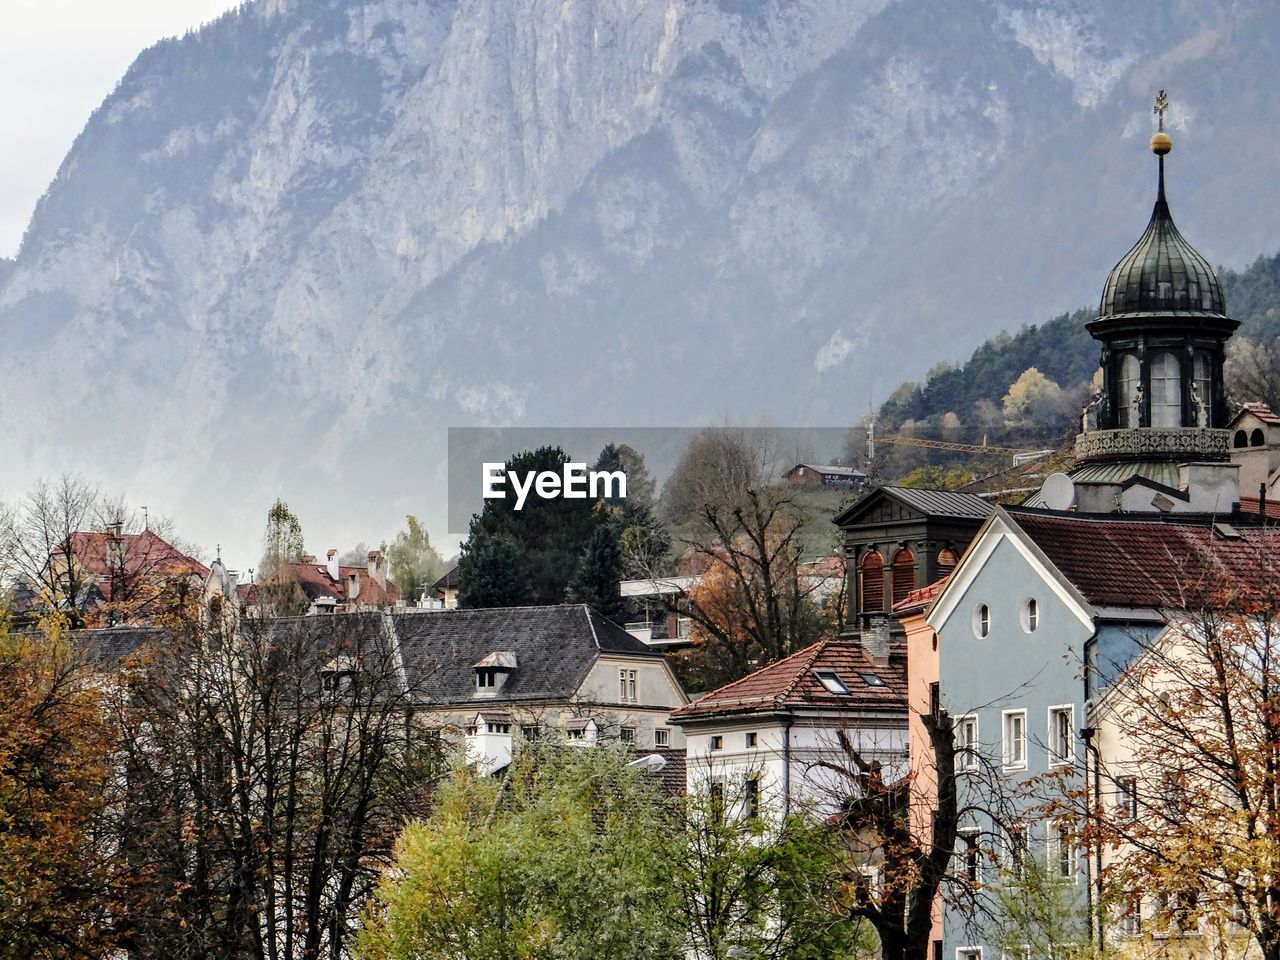 Innsbruck's cityscape